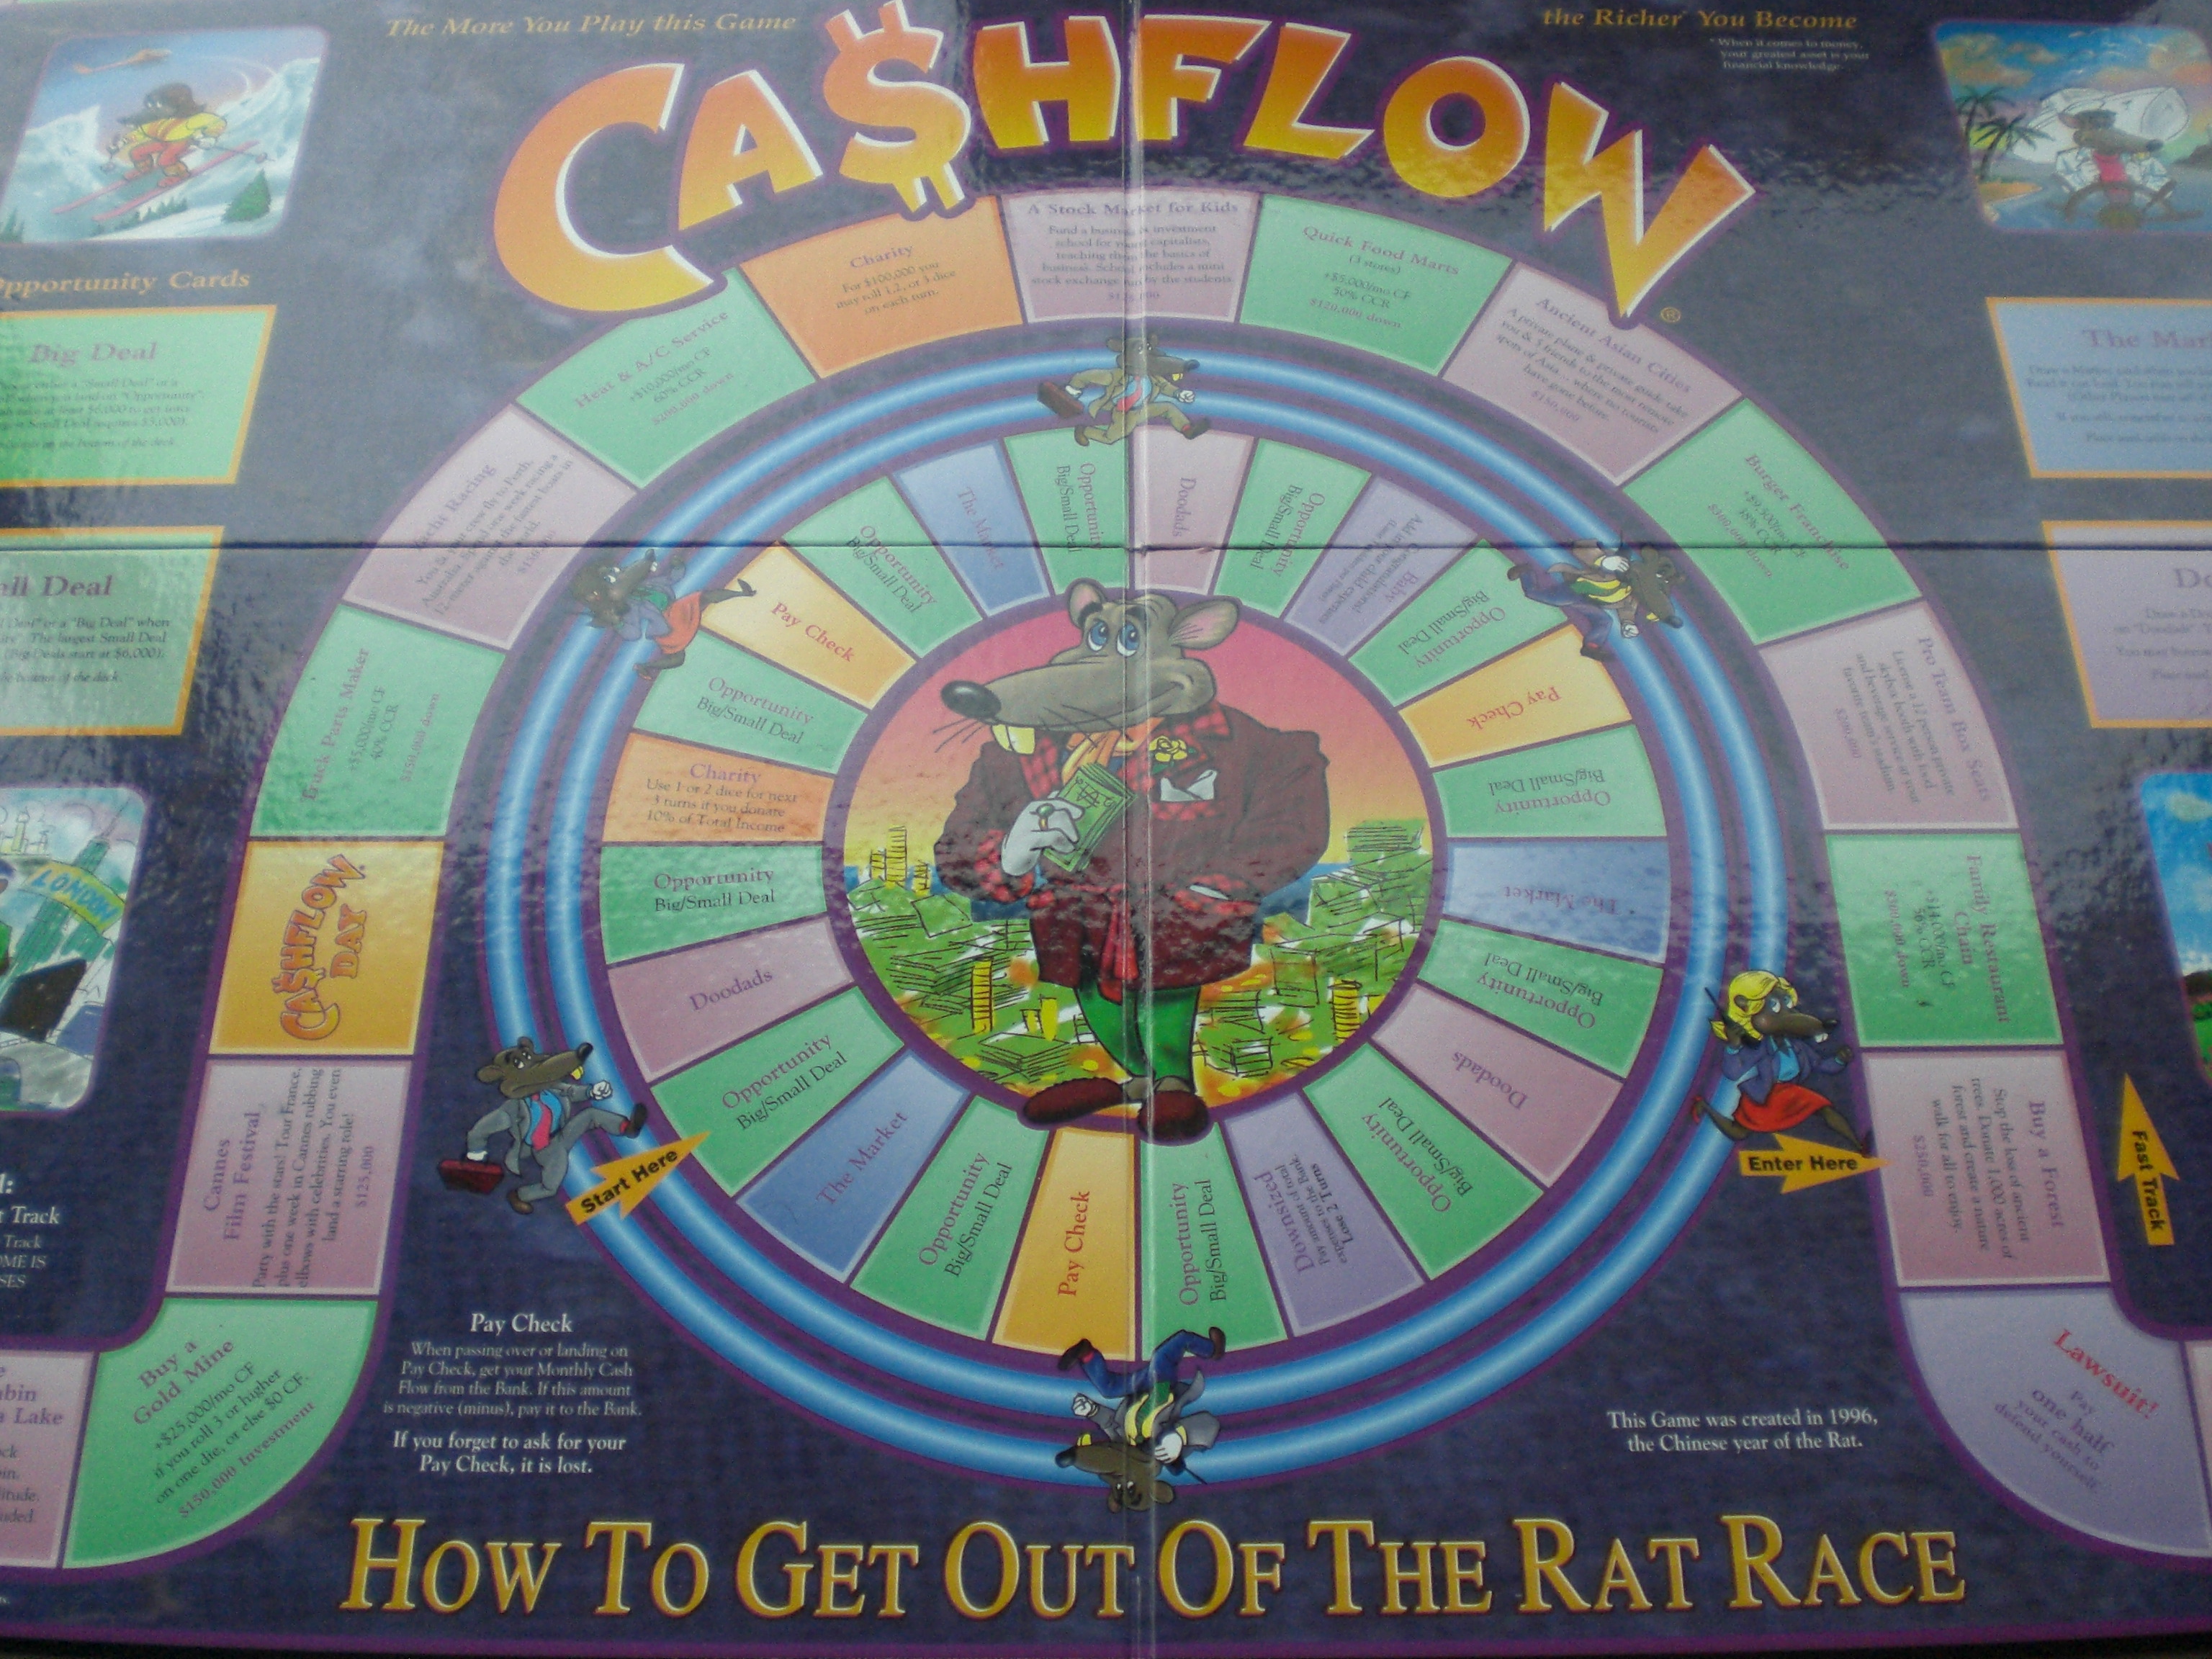 cashflow 101 game